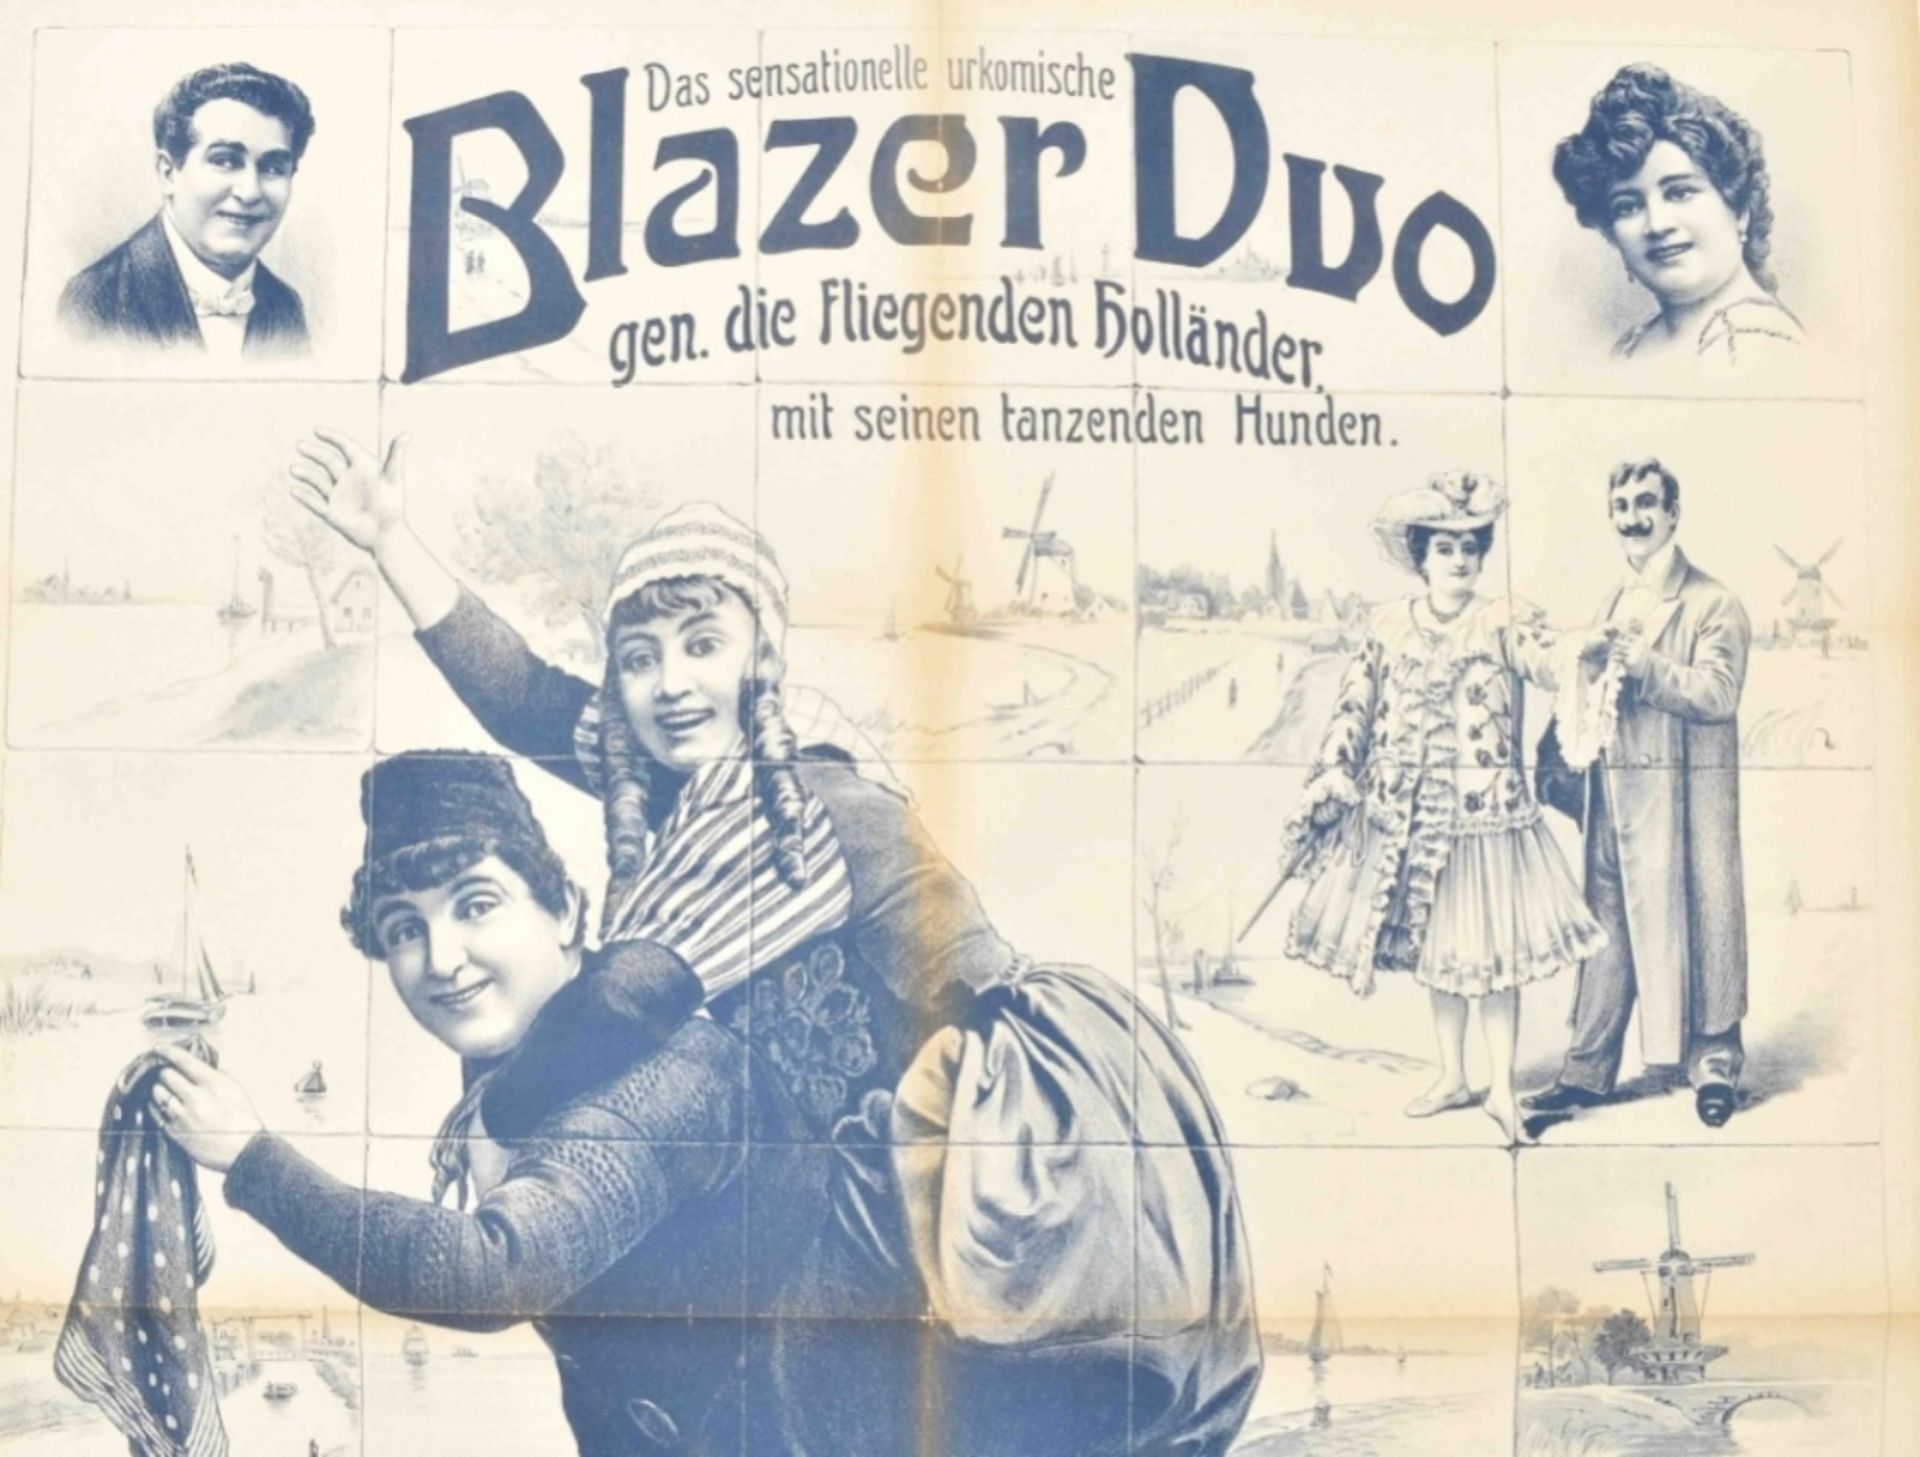 [Folklore] Das sensationelle Urkomische Blazer Duo, gen. die Fliegenden Holländer. Friedländer, 1907 - Bild 4 aus 4